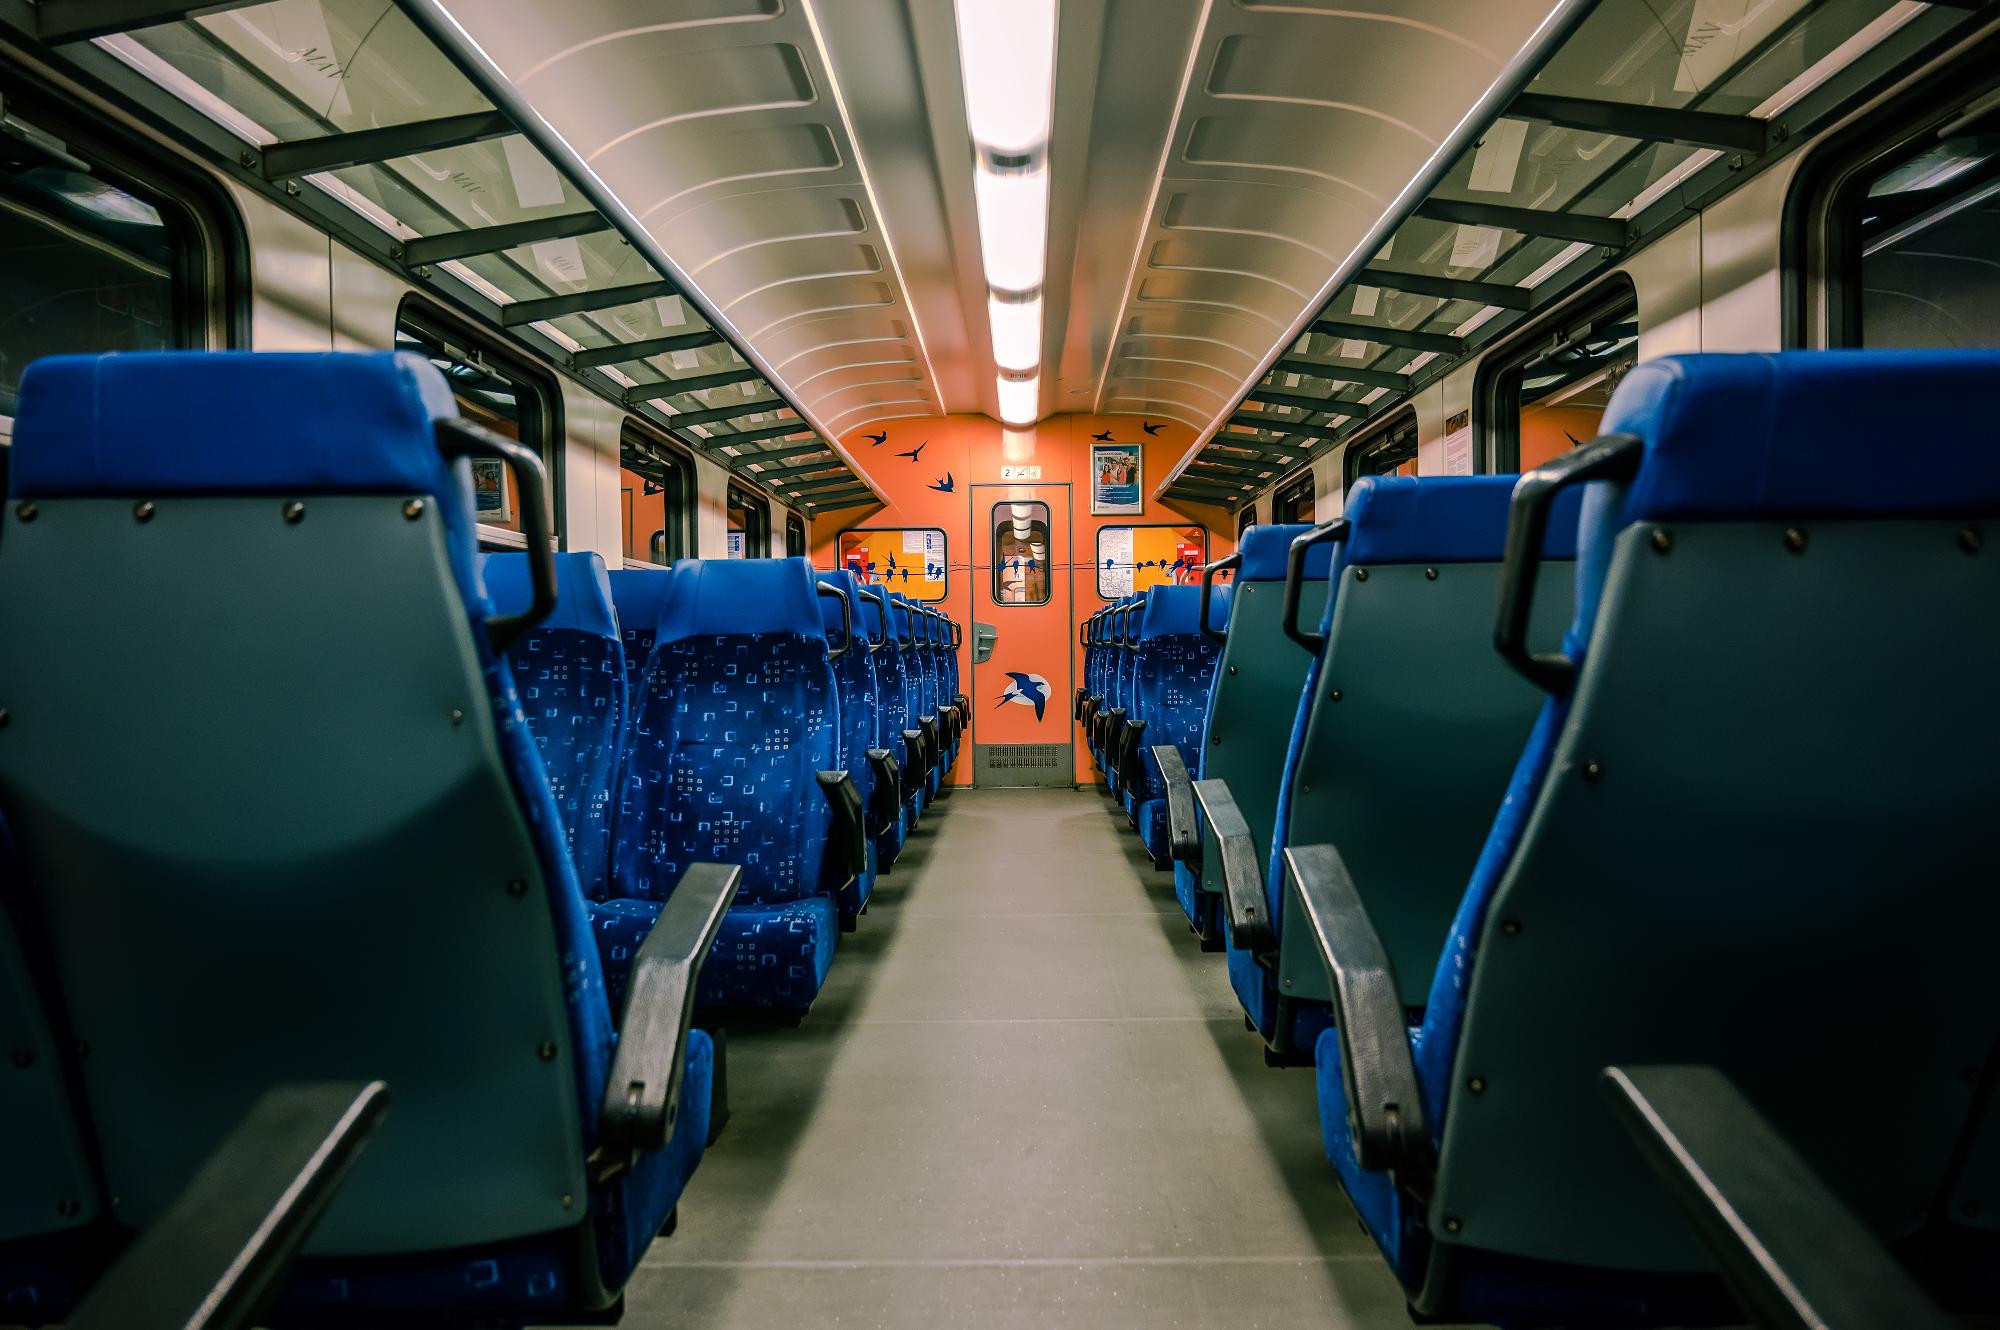 Baleset miatt nem járnak a vonatok Inárcs-Kakucs és Ócsa között, valamint Sáránd és Debrecen között